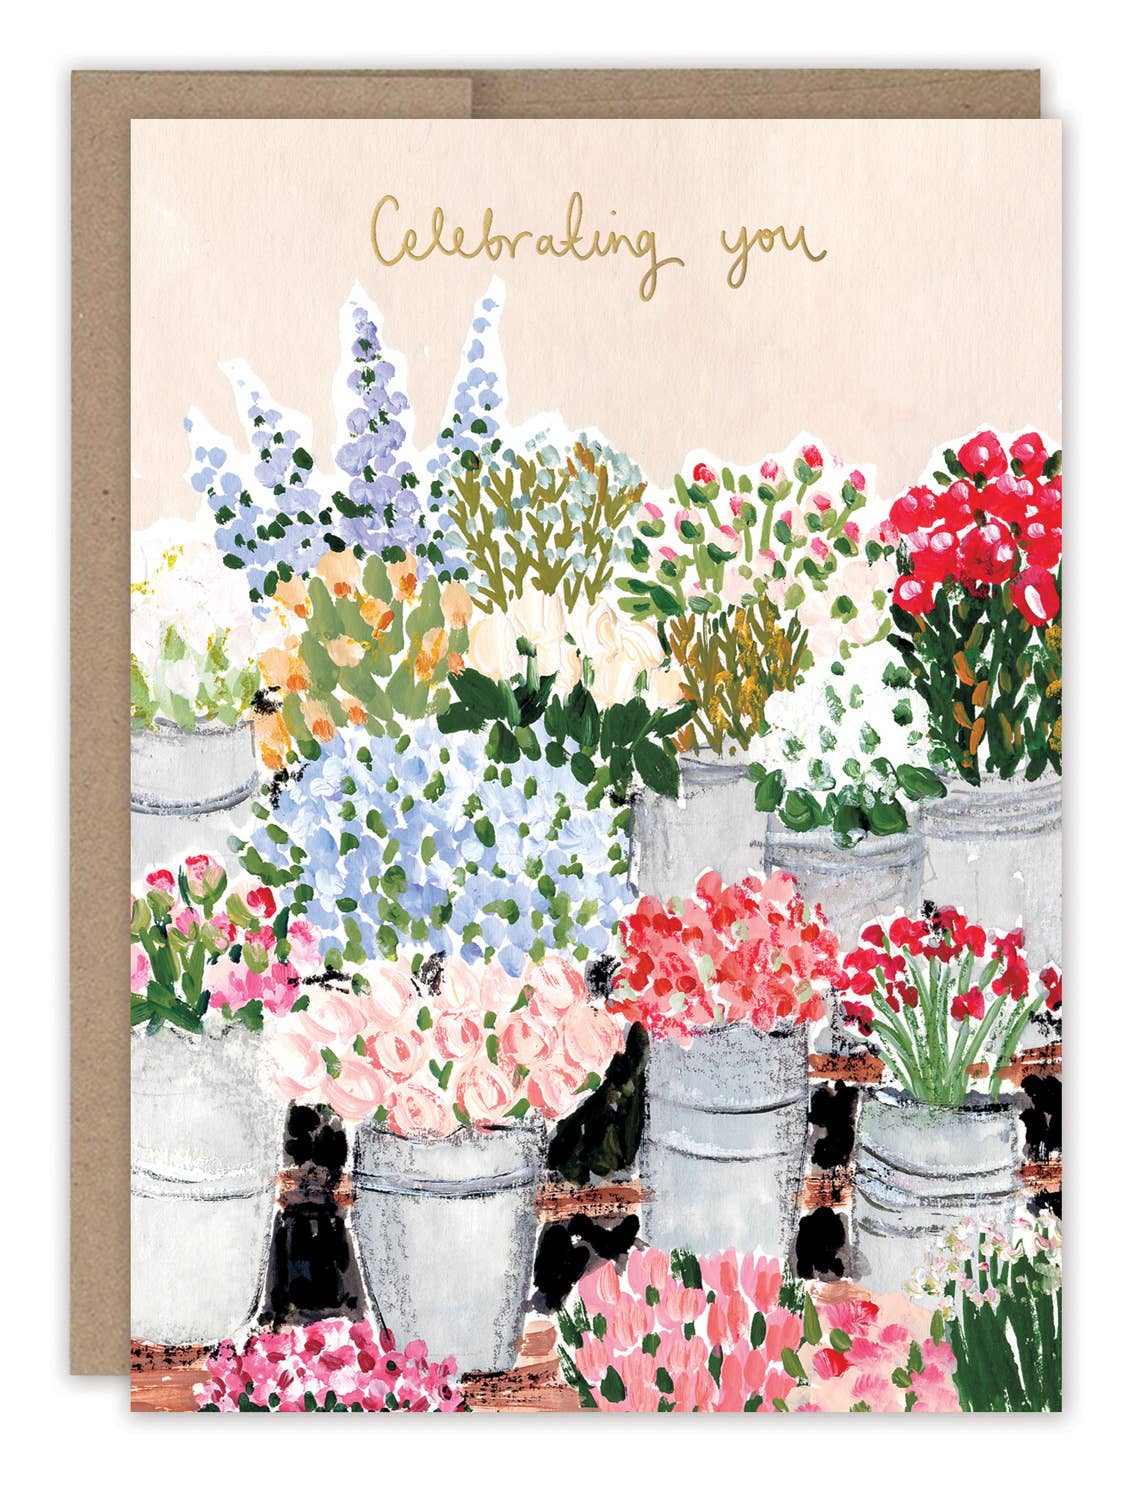 Biely & Shoaf Flower Market Birthday Card